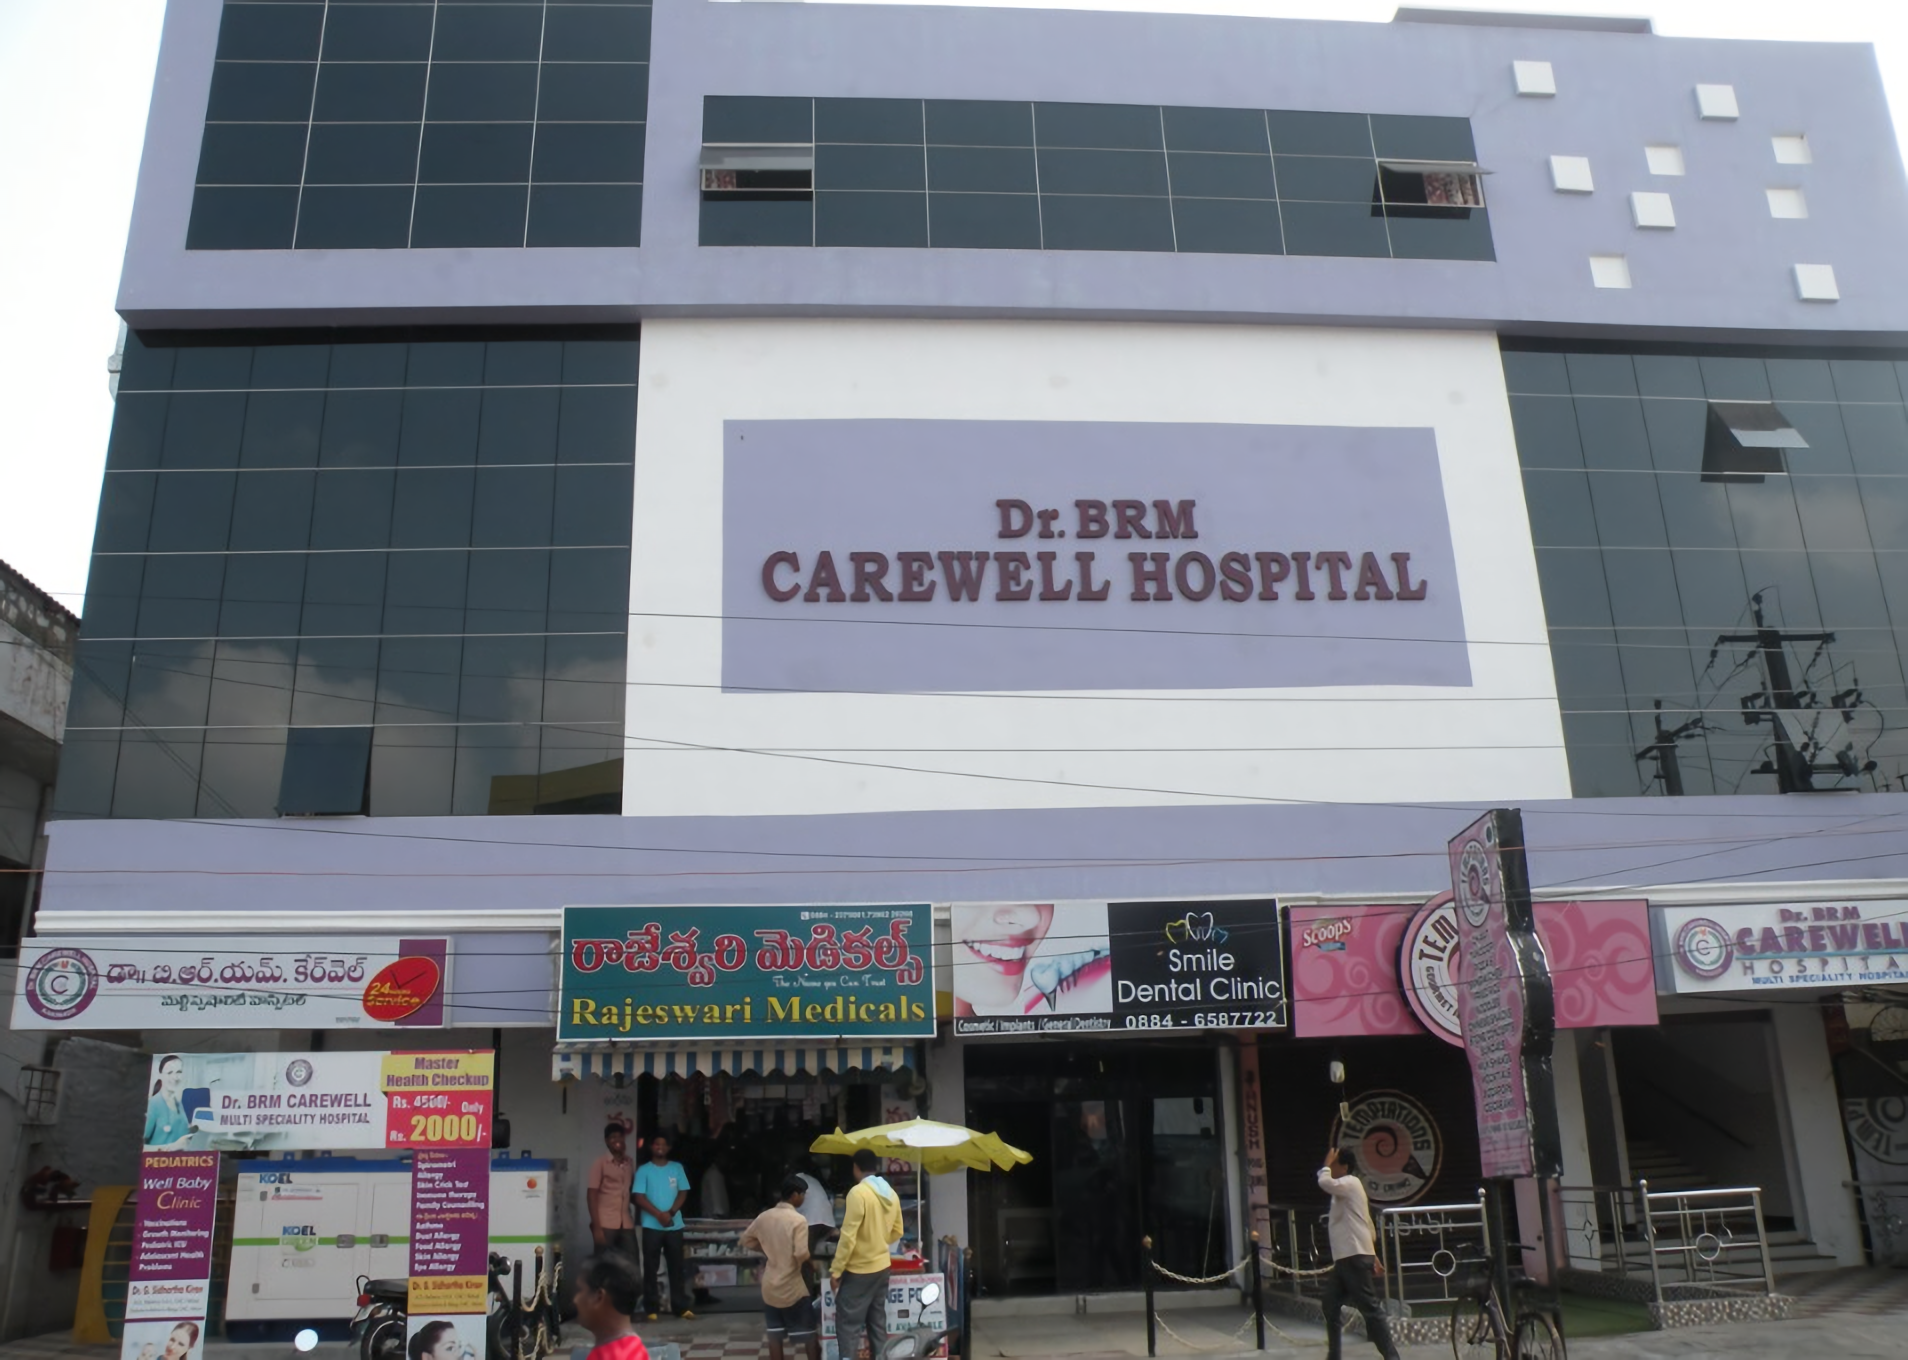 Dr. BRM Carewell Hospital